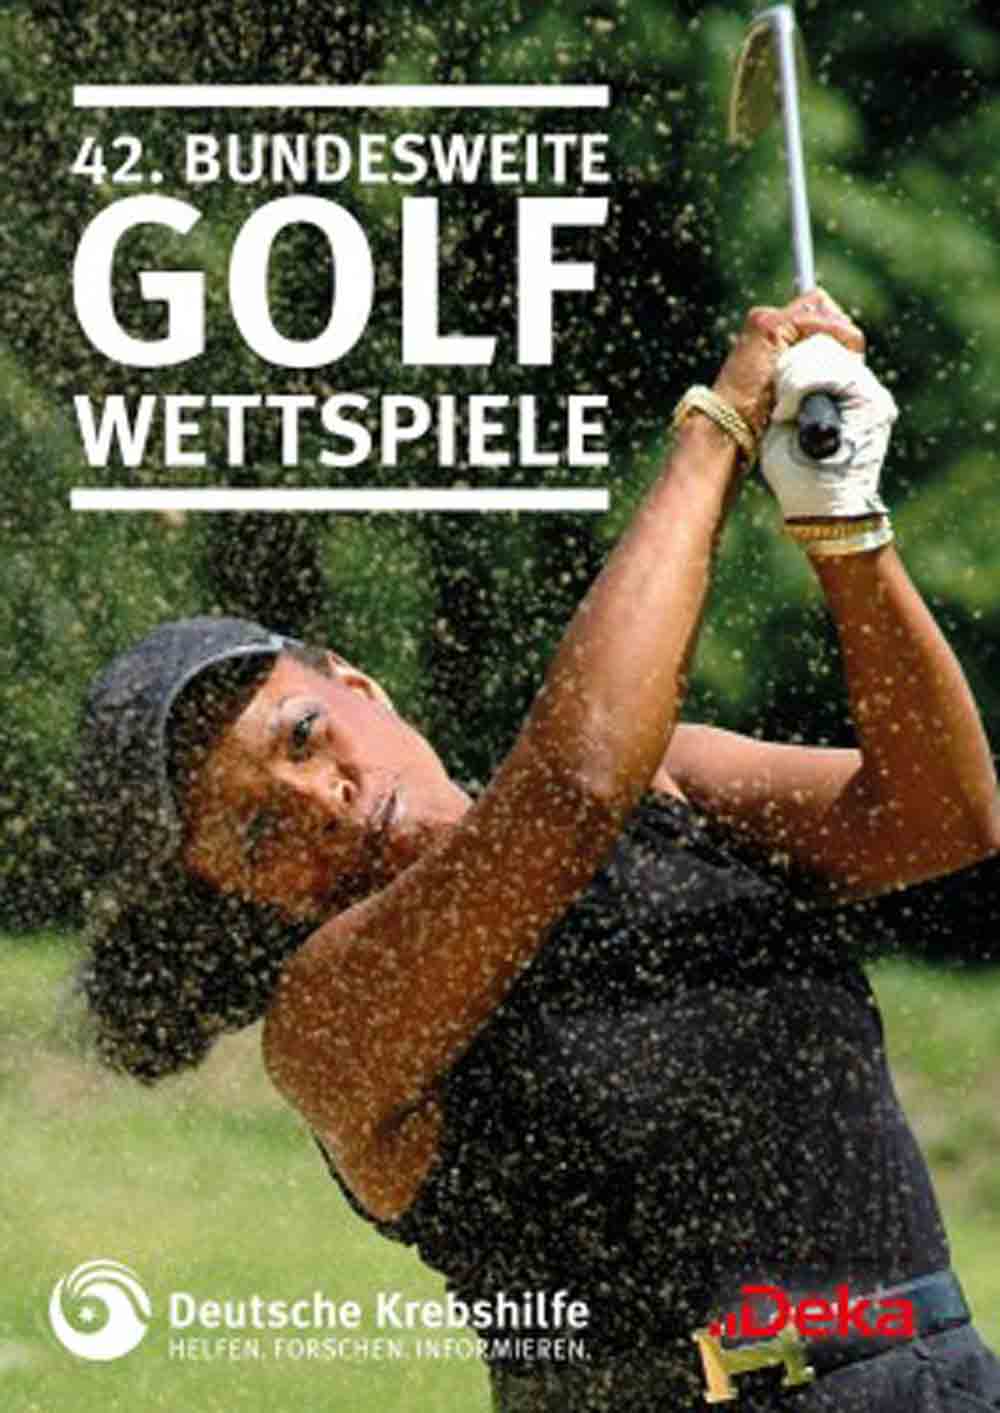 Golfen und Helfen – gemeinsam gegen Krebs! Benefiz Golfturnierserie zugunsten der Deutschen Krebshilfe